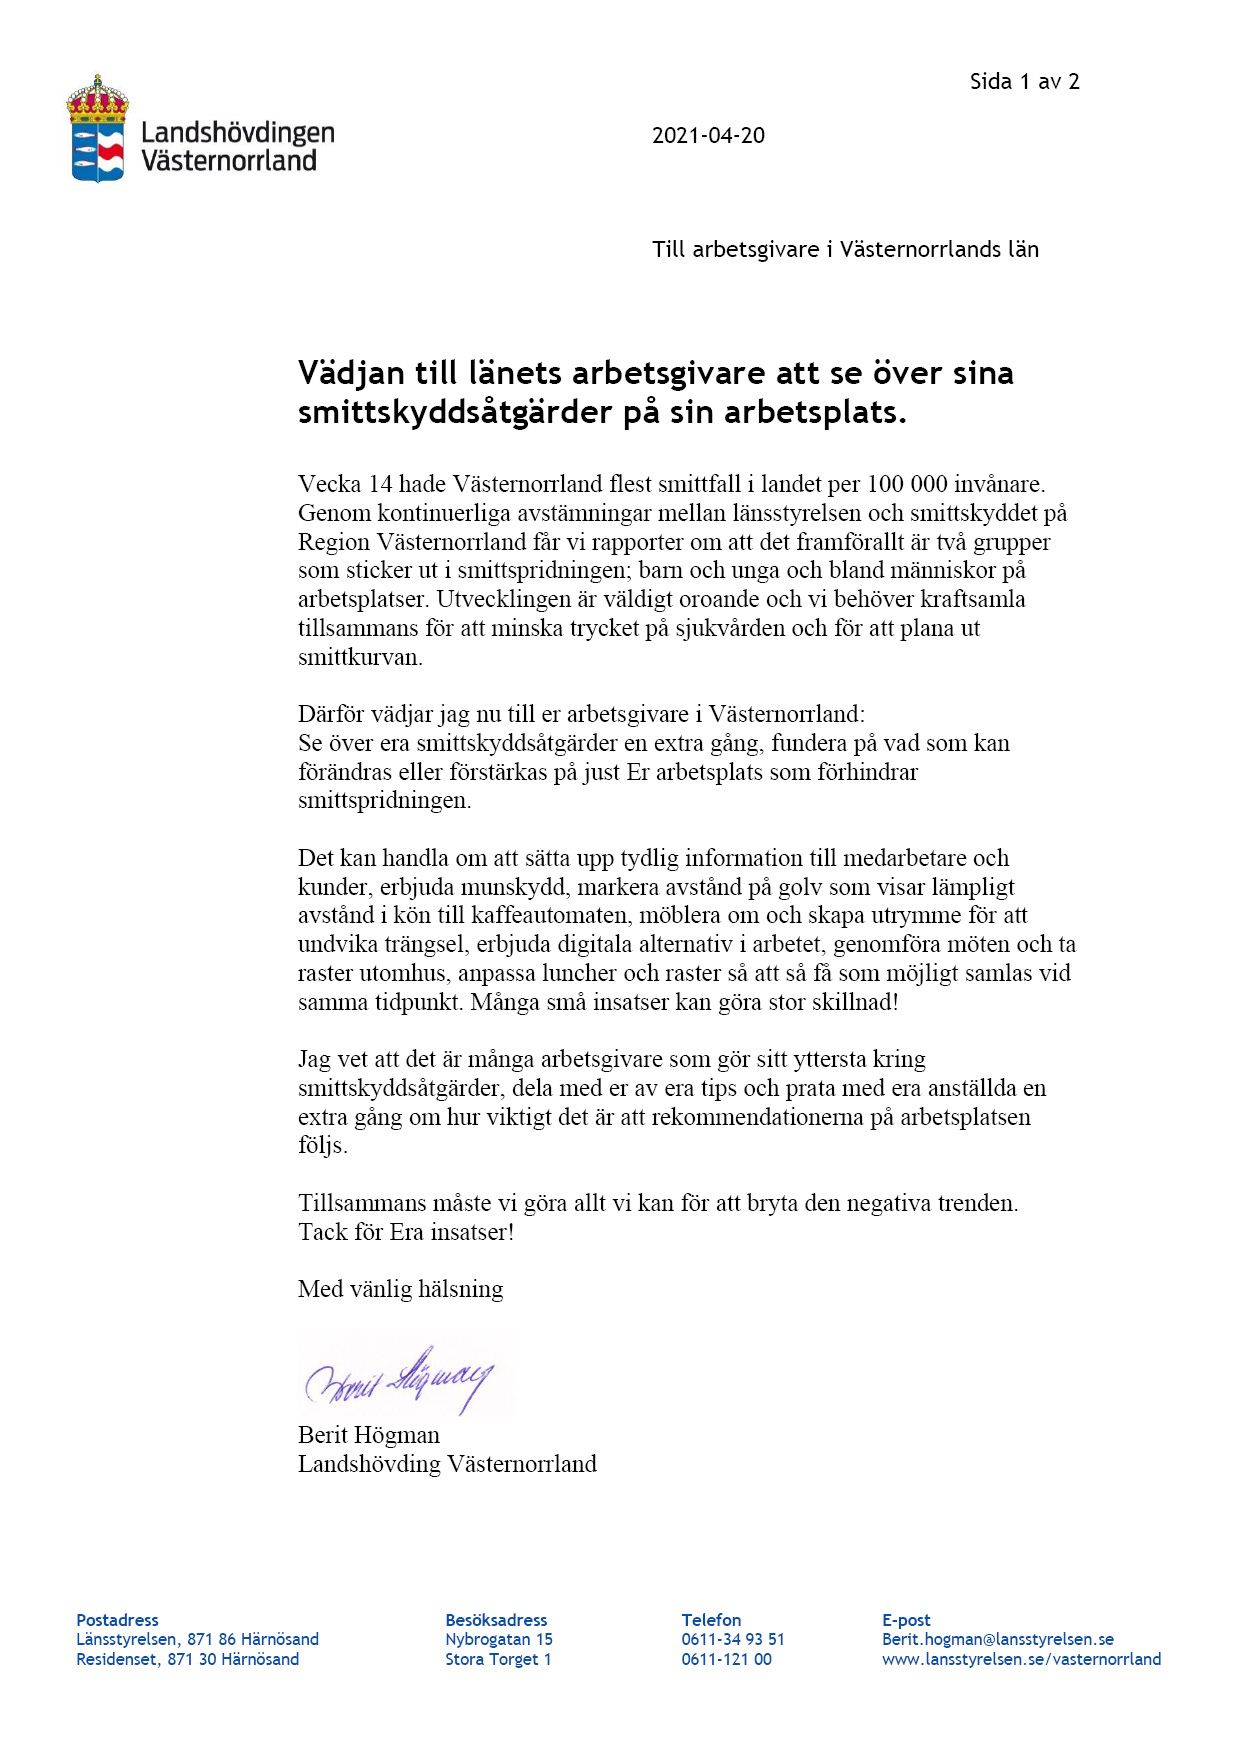 Bilden är ett brev till arbetsgivare i Västernorrlands län från Landshövding Berit Högman, daterat den 20 april 2021. Du kan ladda hem ett uppläsningsbart pdf-dokument från den här sidan med samma innehåll.